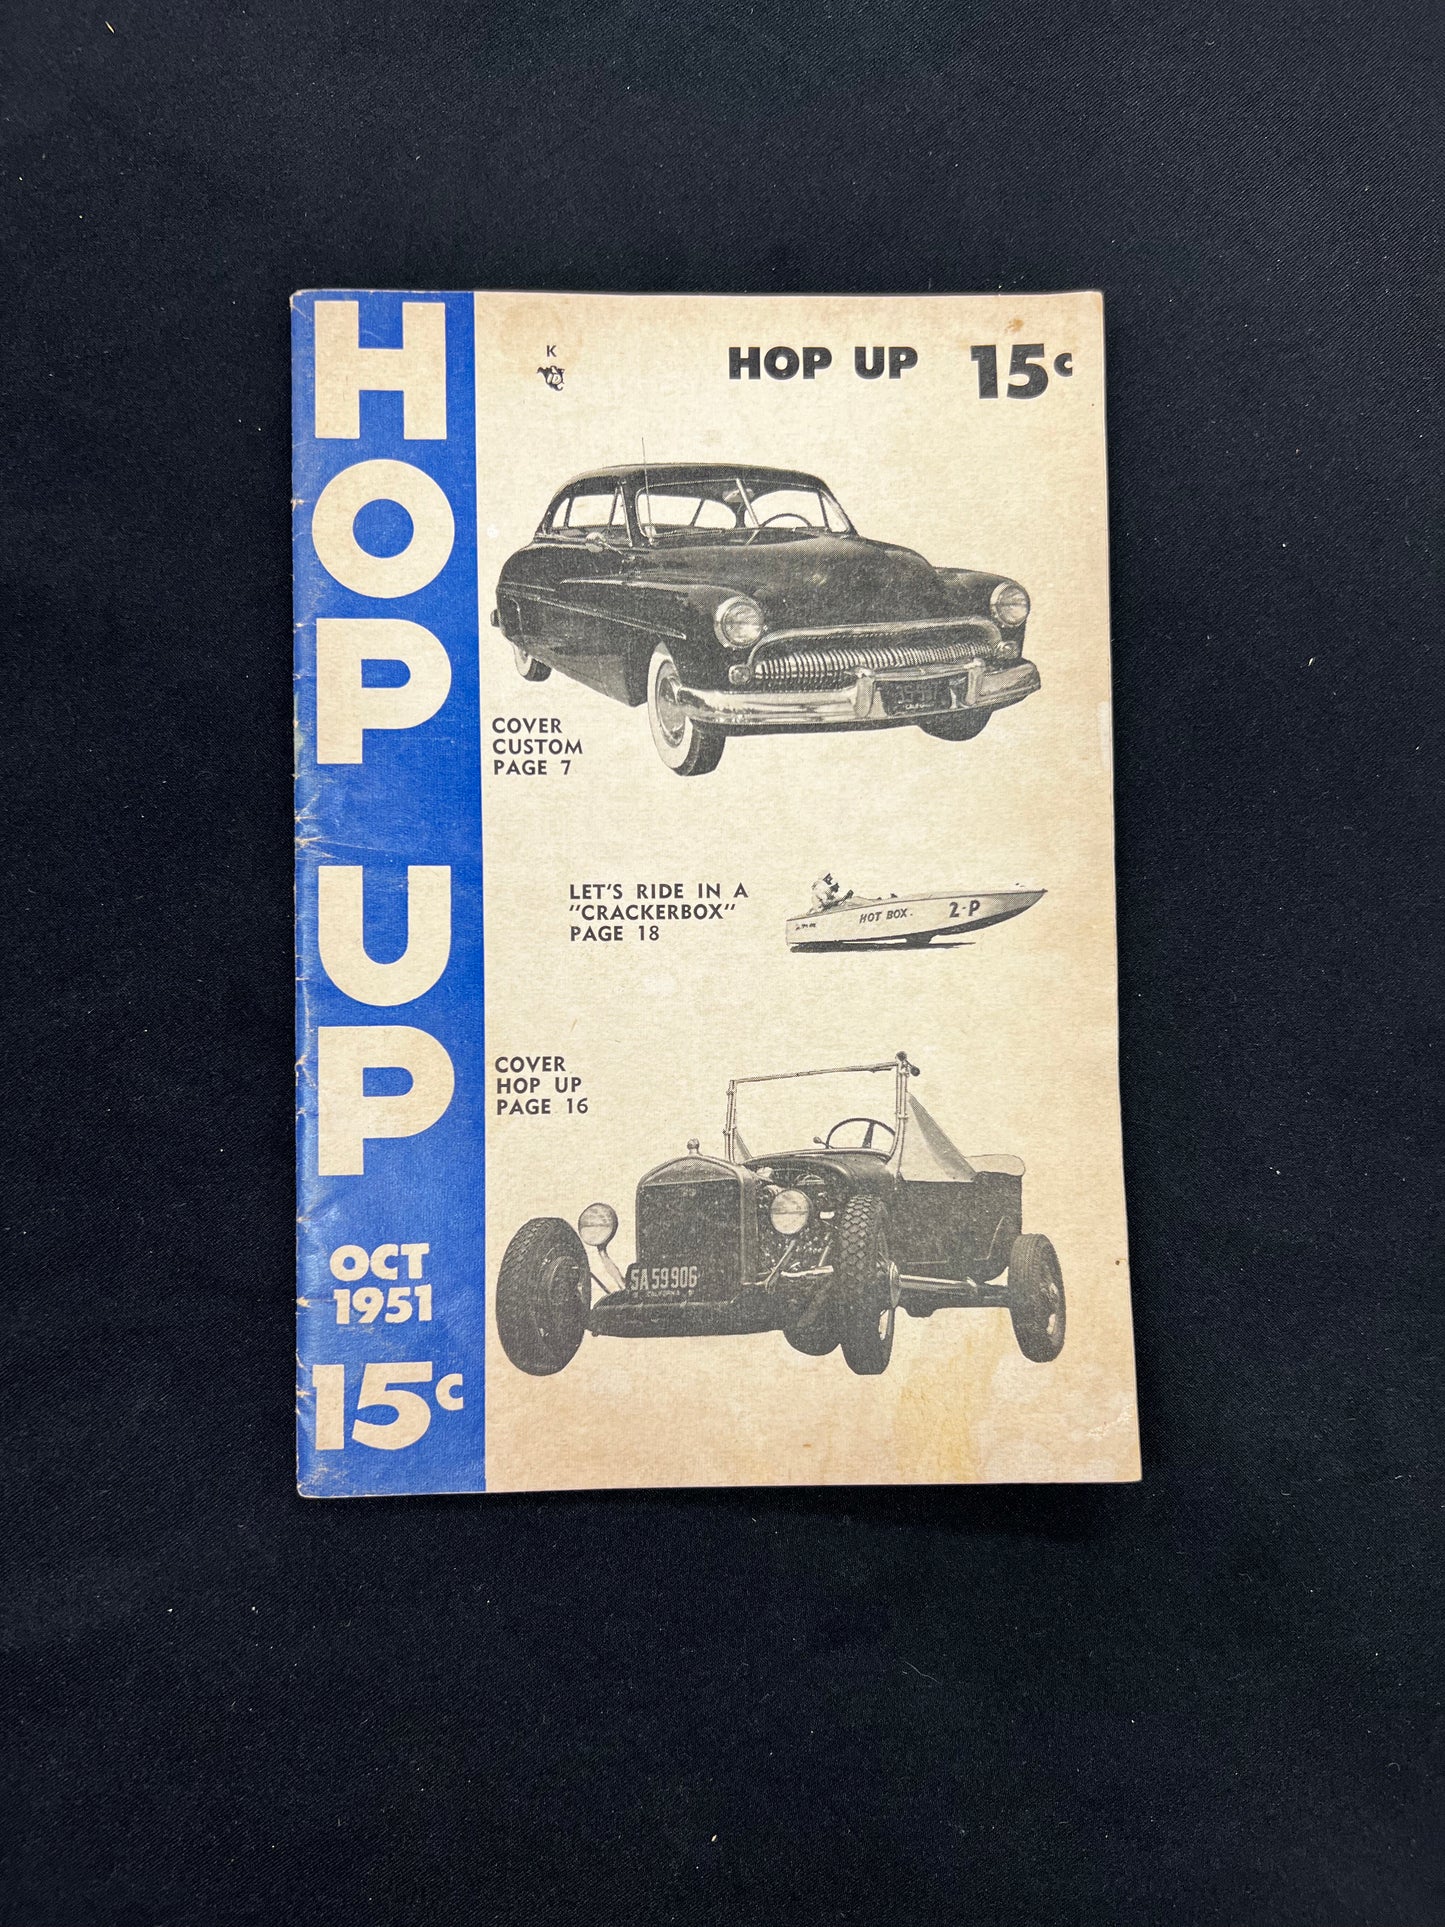 Hop Up - October 1951